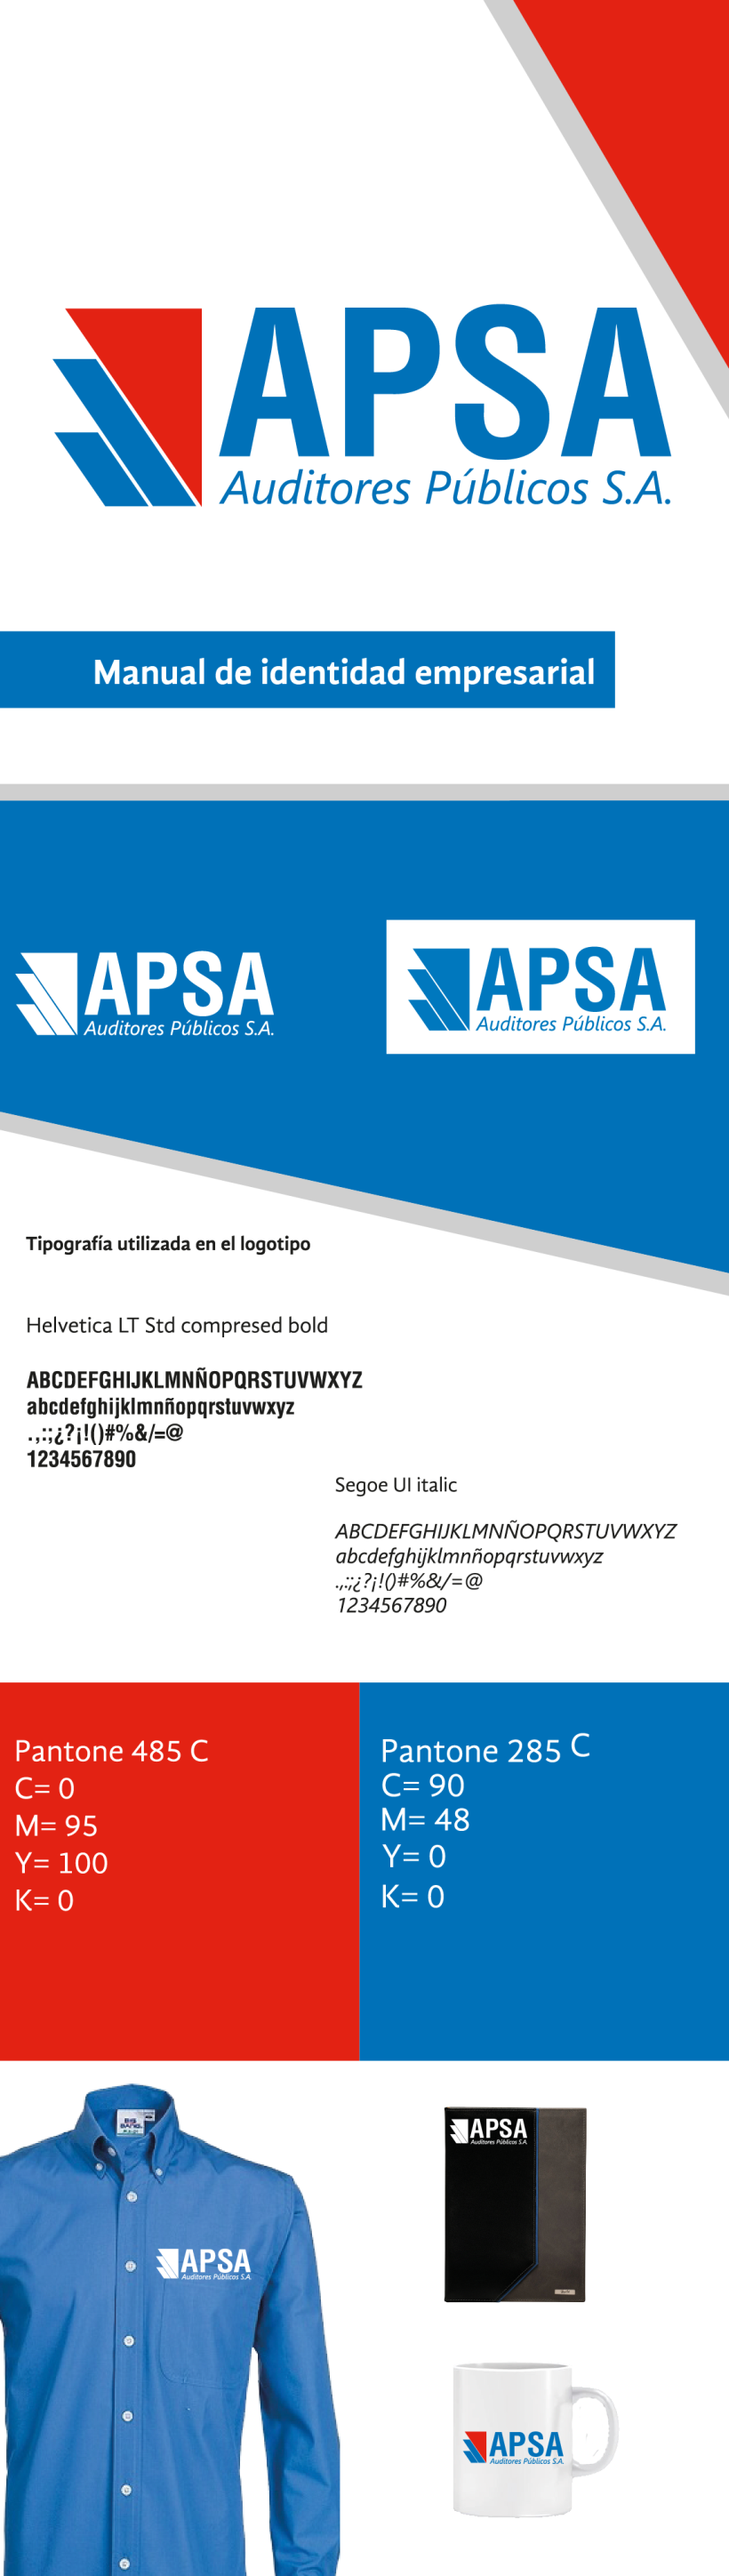 APSA, manual de identidad empresarial-Proyecto universitario 0